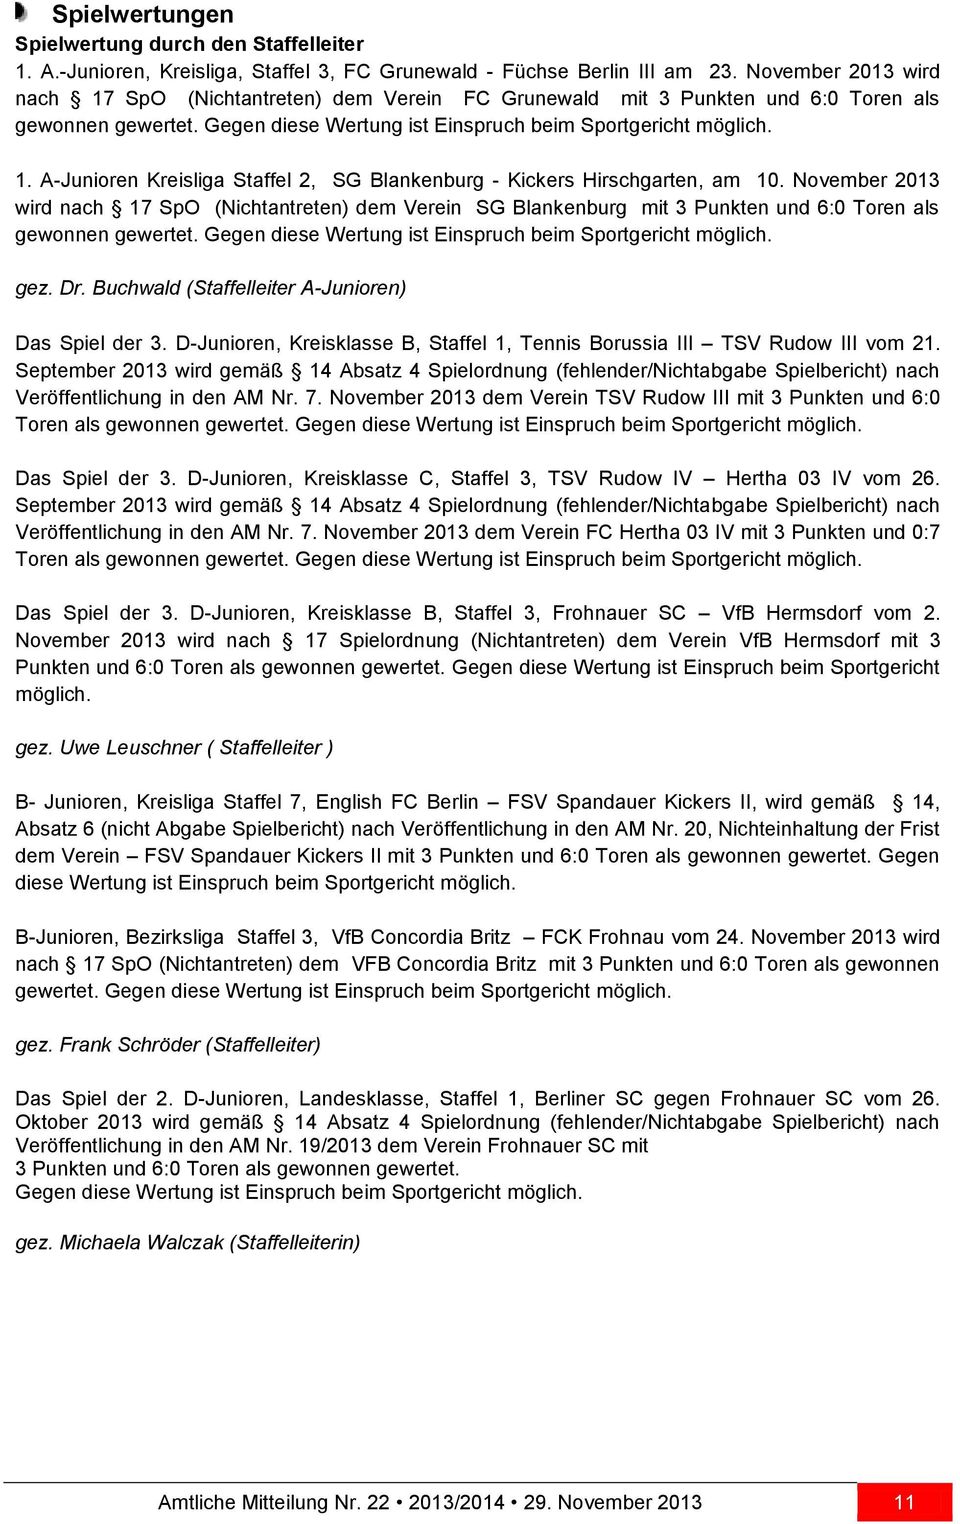 November 2013 wird nach 17 SpO (Nichtantreten) dem Verein SG Blankenburg mit 3 Punkten und 6:0 Toren als gewonnen gewertet. Gegen diese Wertung ist Einspruch beim Sportgericht möglich. gez. Dr.